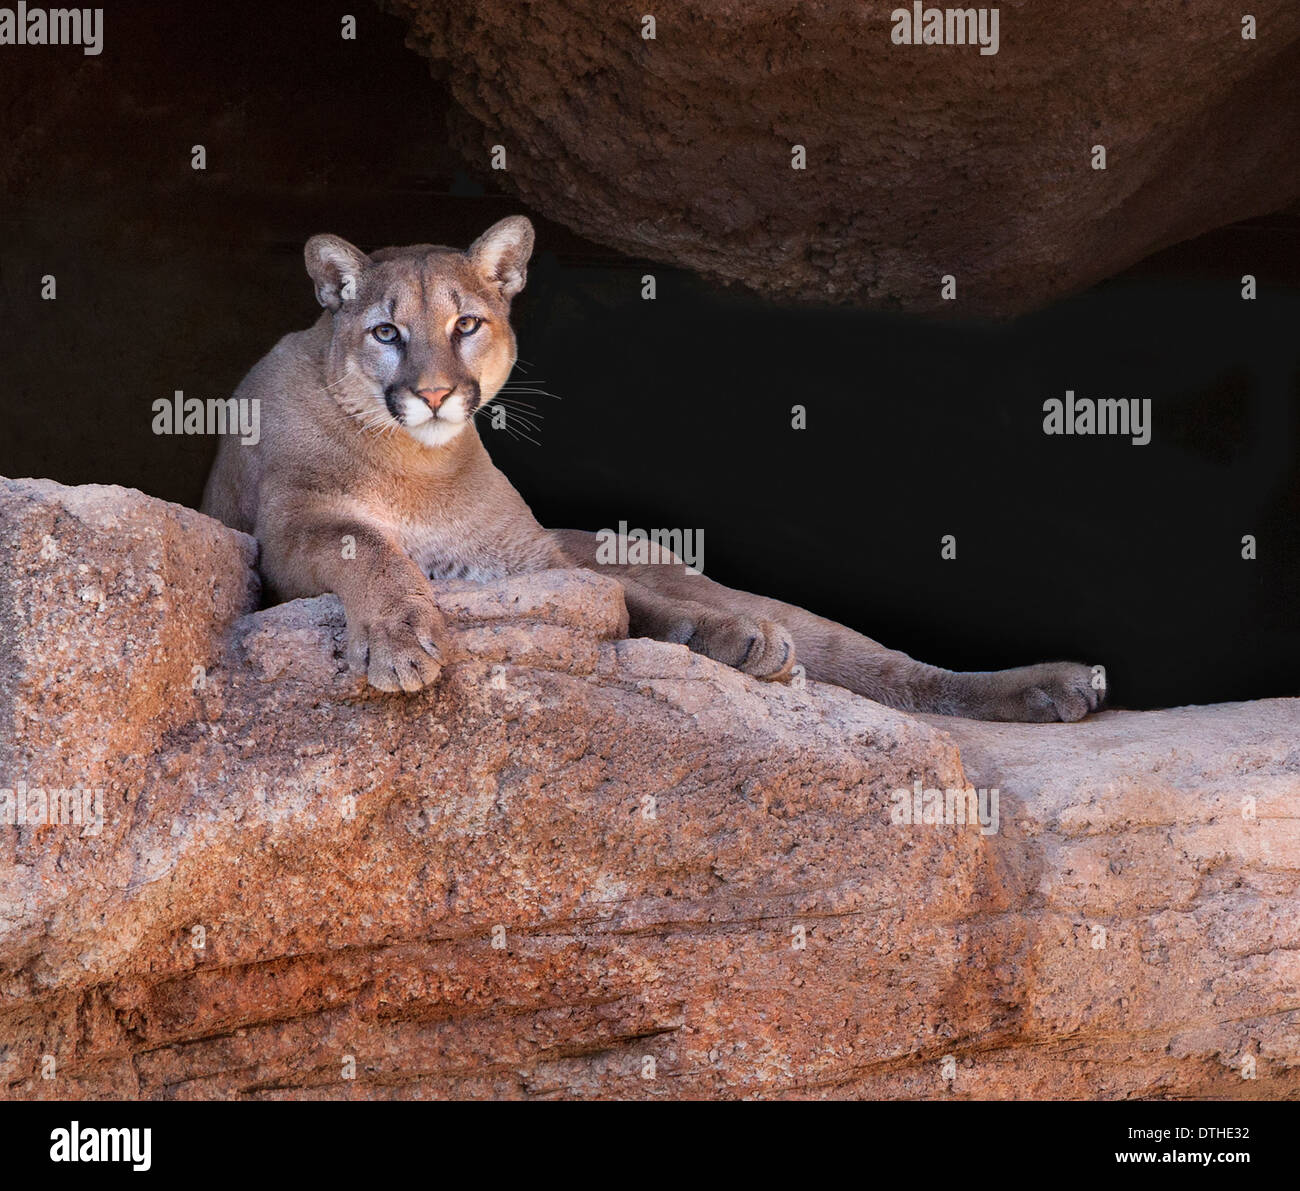 Ein Puma oder Berglöwe wacht von einem felsigen Barsch aus. Aufgenommen in einem Tierschutzgebiet in Tucson, Arizona, das Arizona - Sonora Desert Museum genannt wird Stockfoto